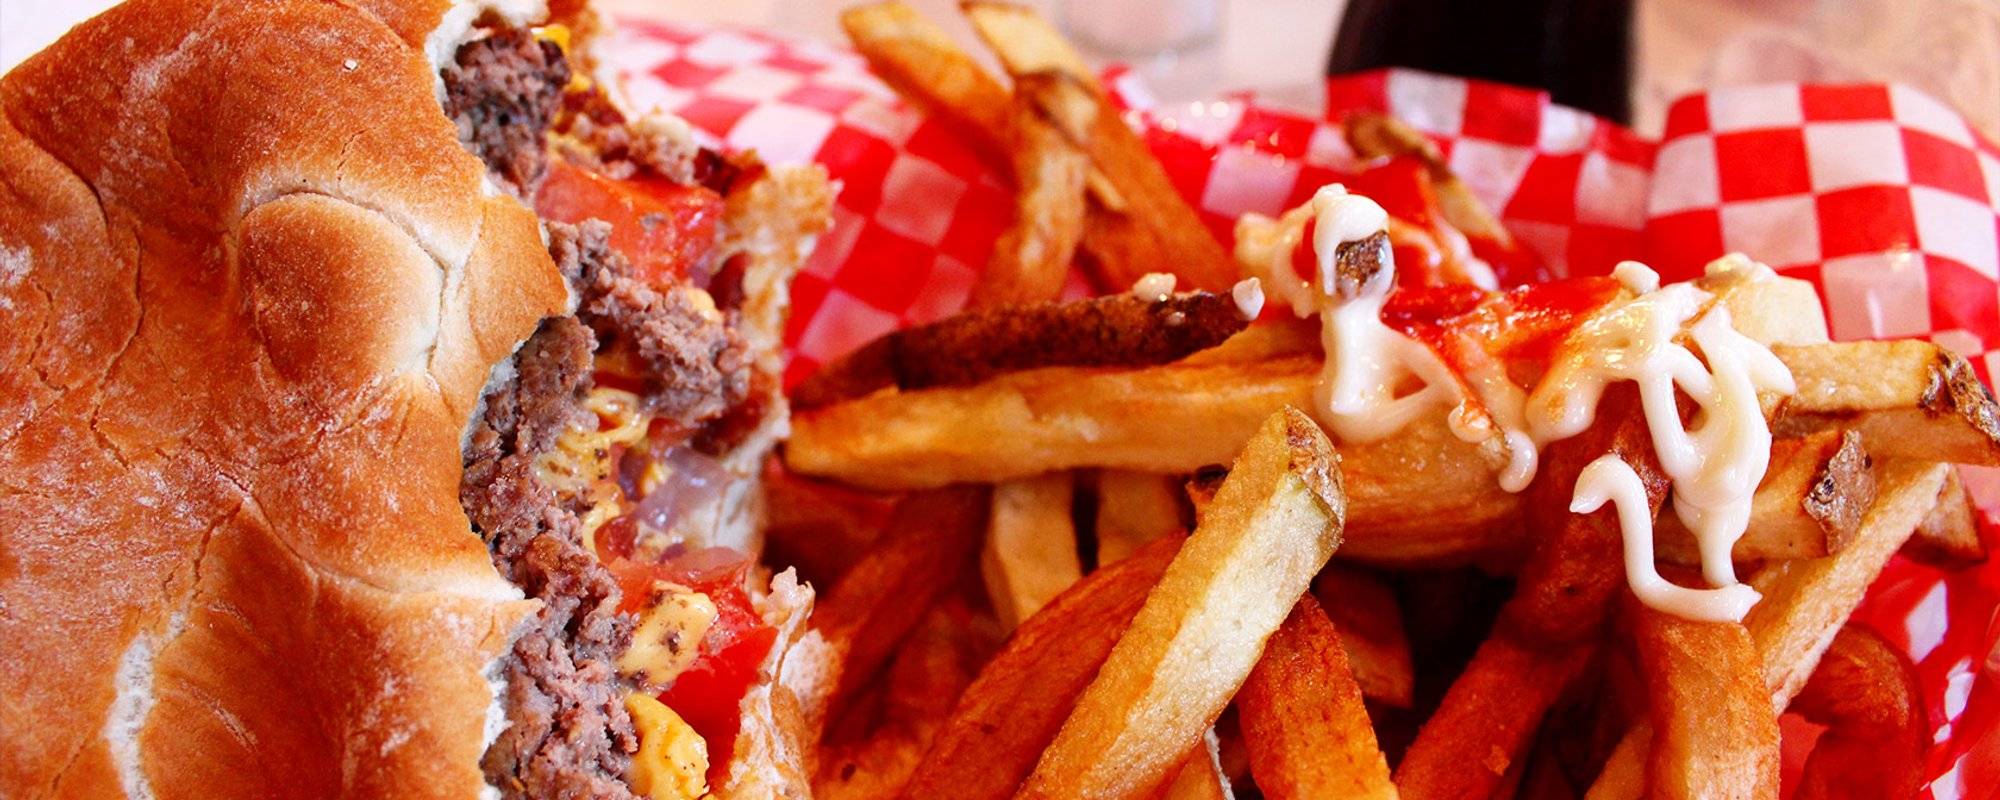 USA roadtrip #26: Heart Attack Grill - World's most calorific burgers